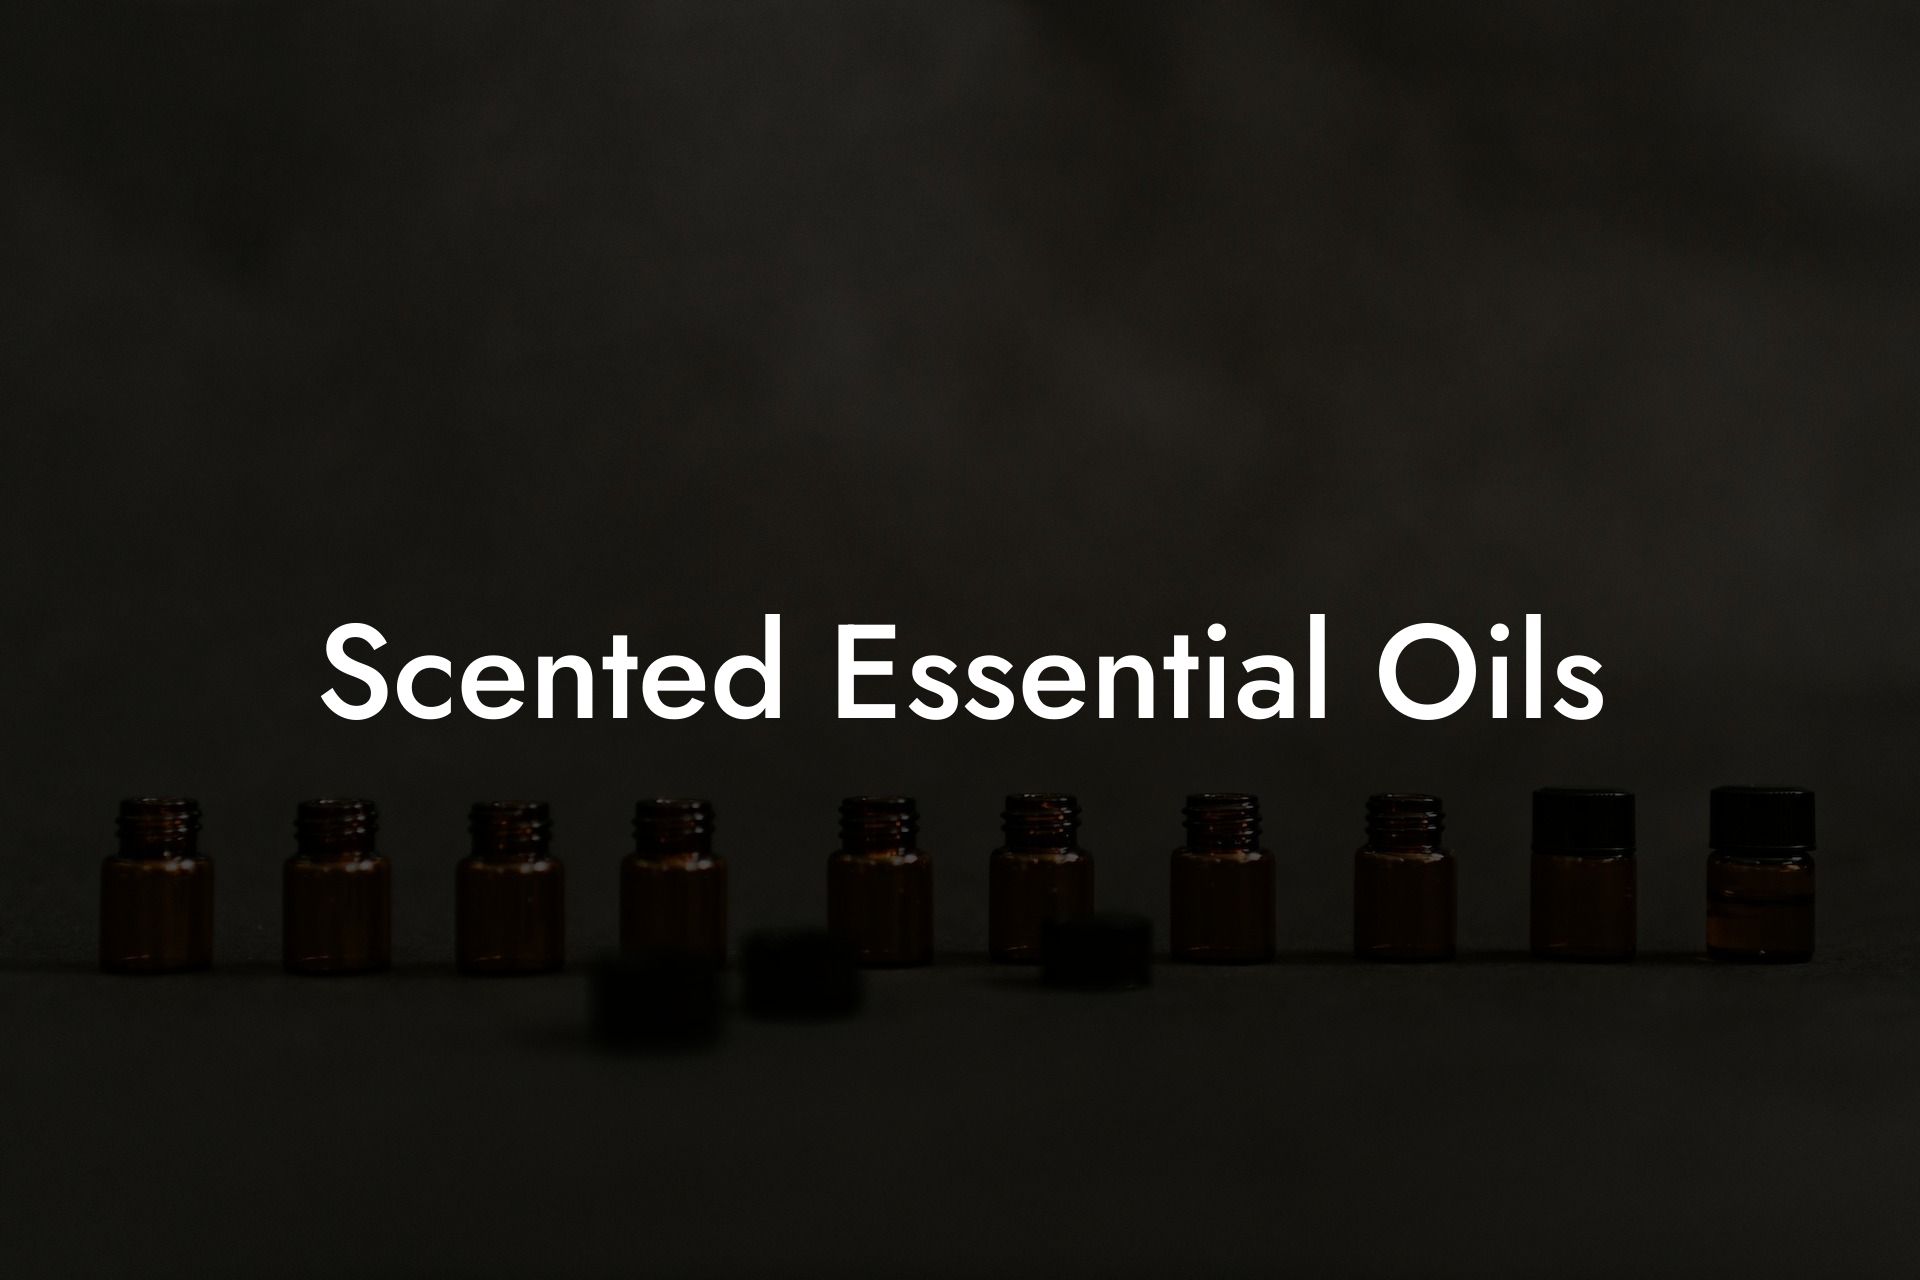 Scented Essential Oils